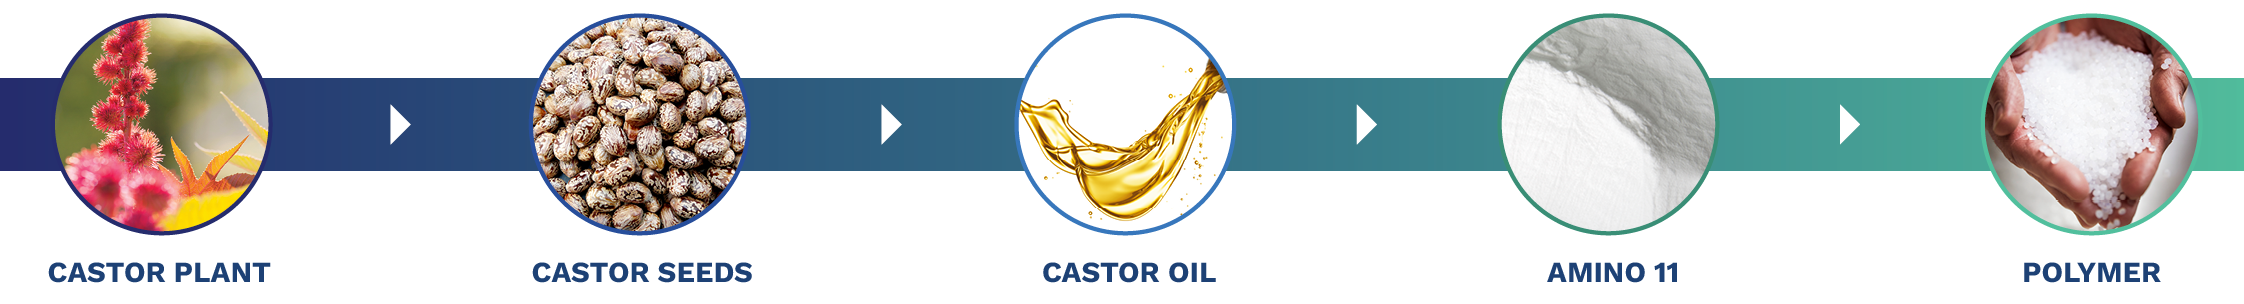 Castor-Amino-PA11 Chain